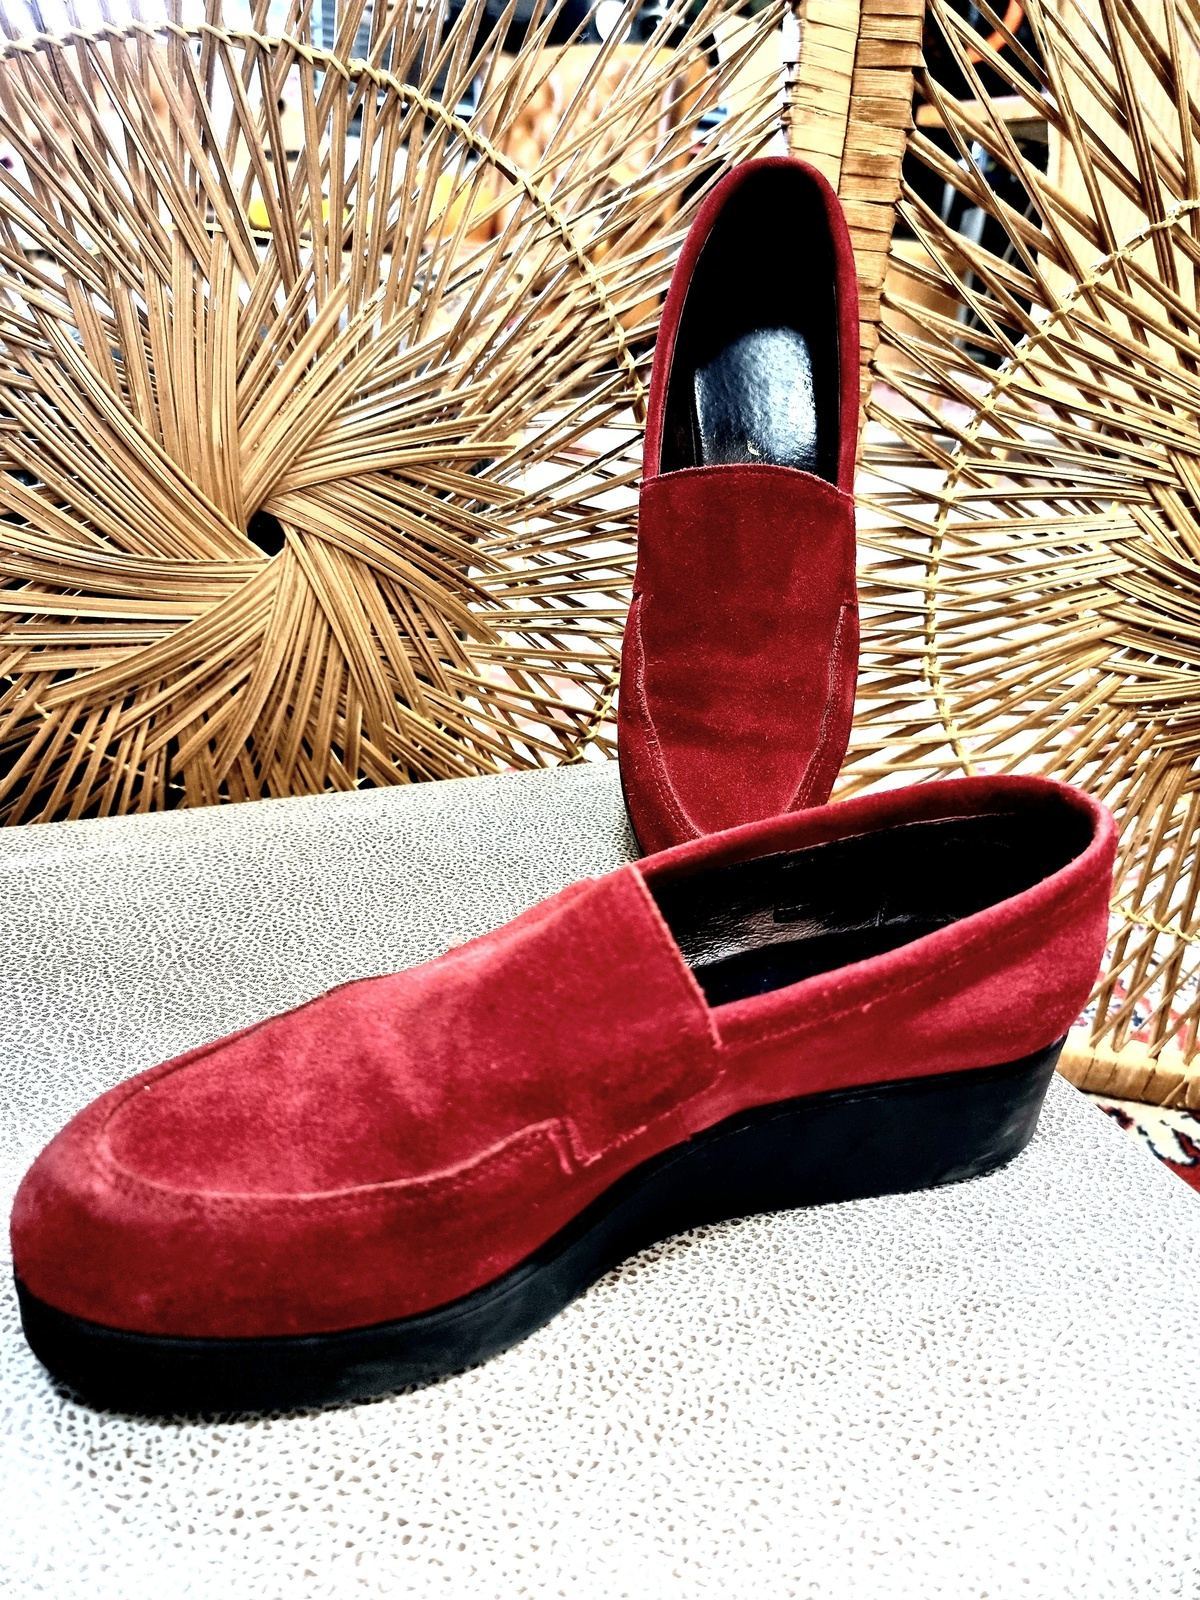 Vintage Platform Shoes